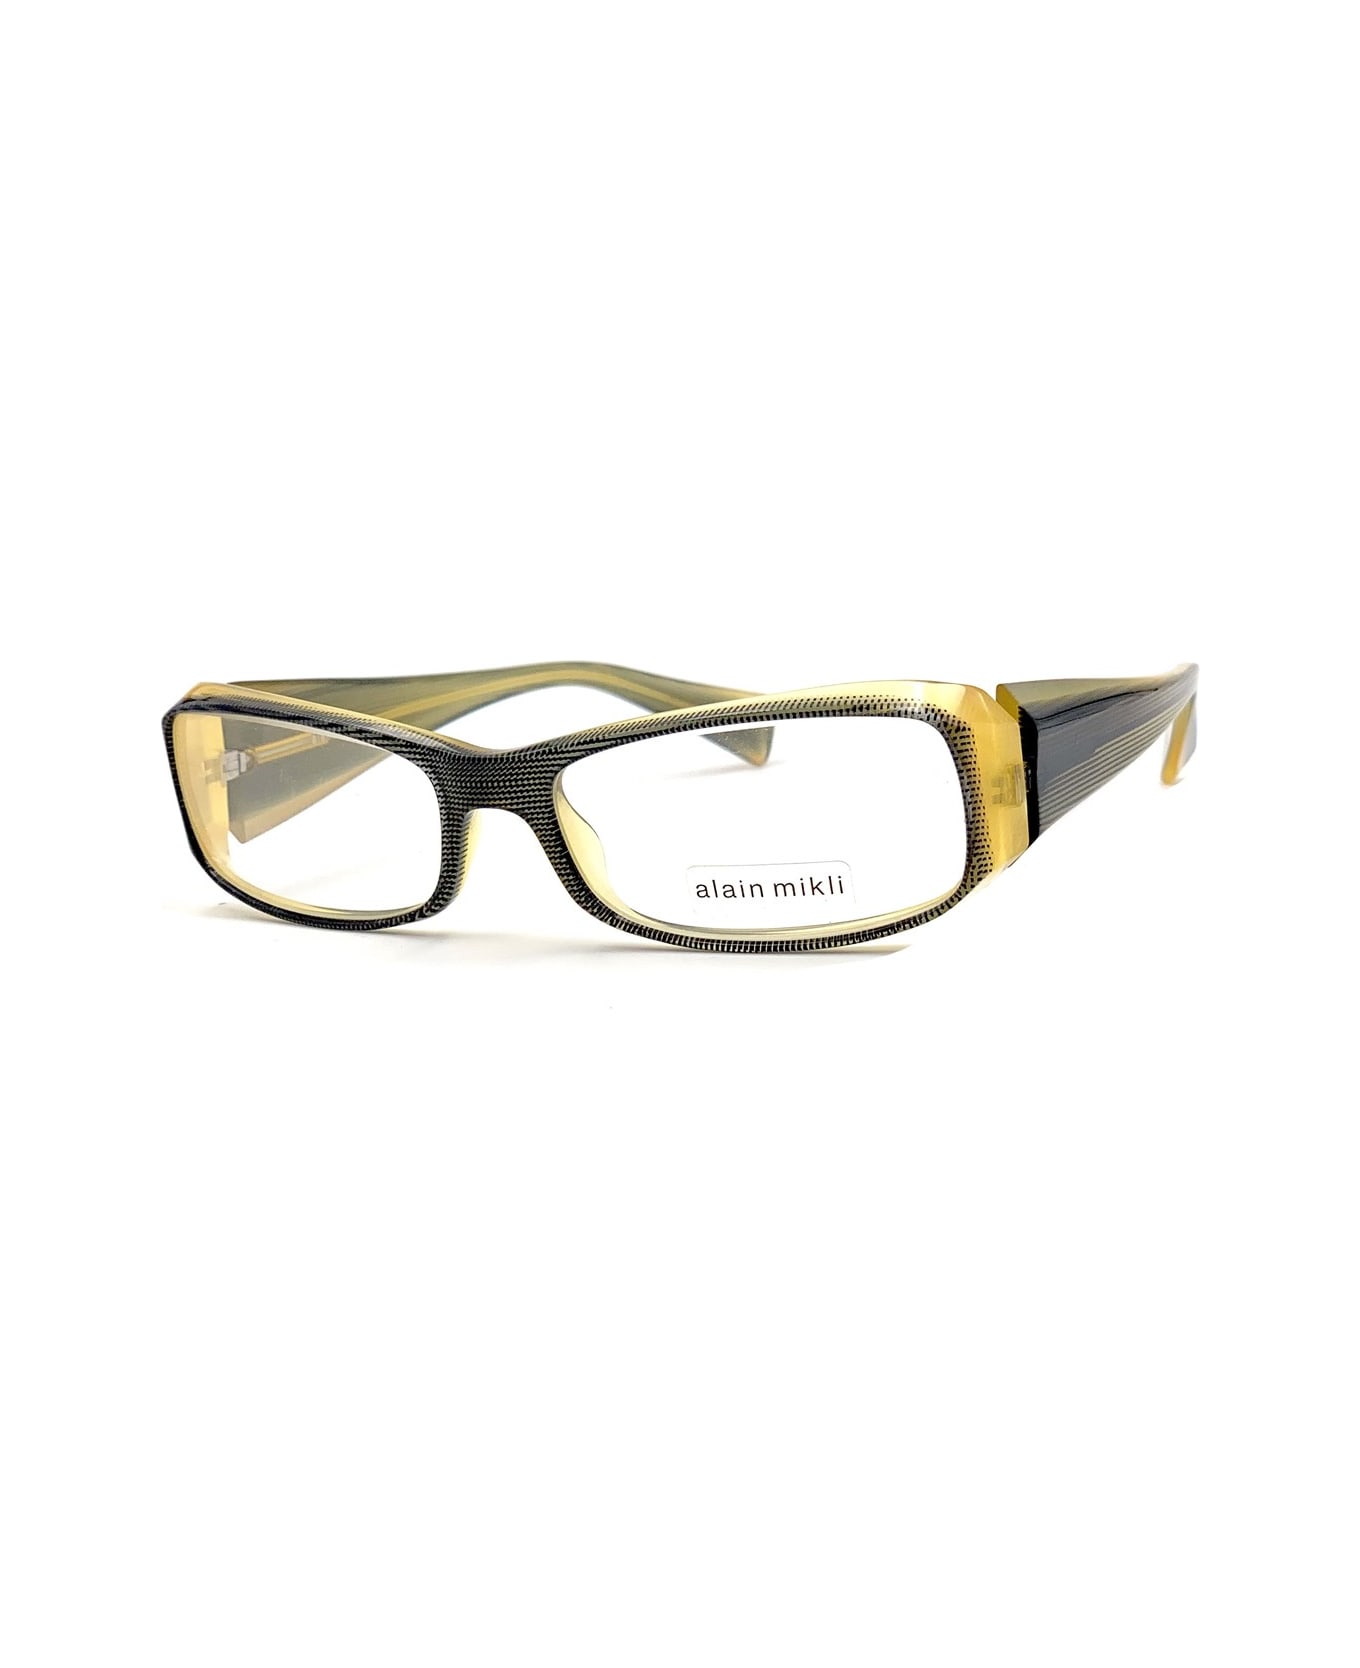 Alain Mikli A0511 Pact Glasses - Giallo